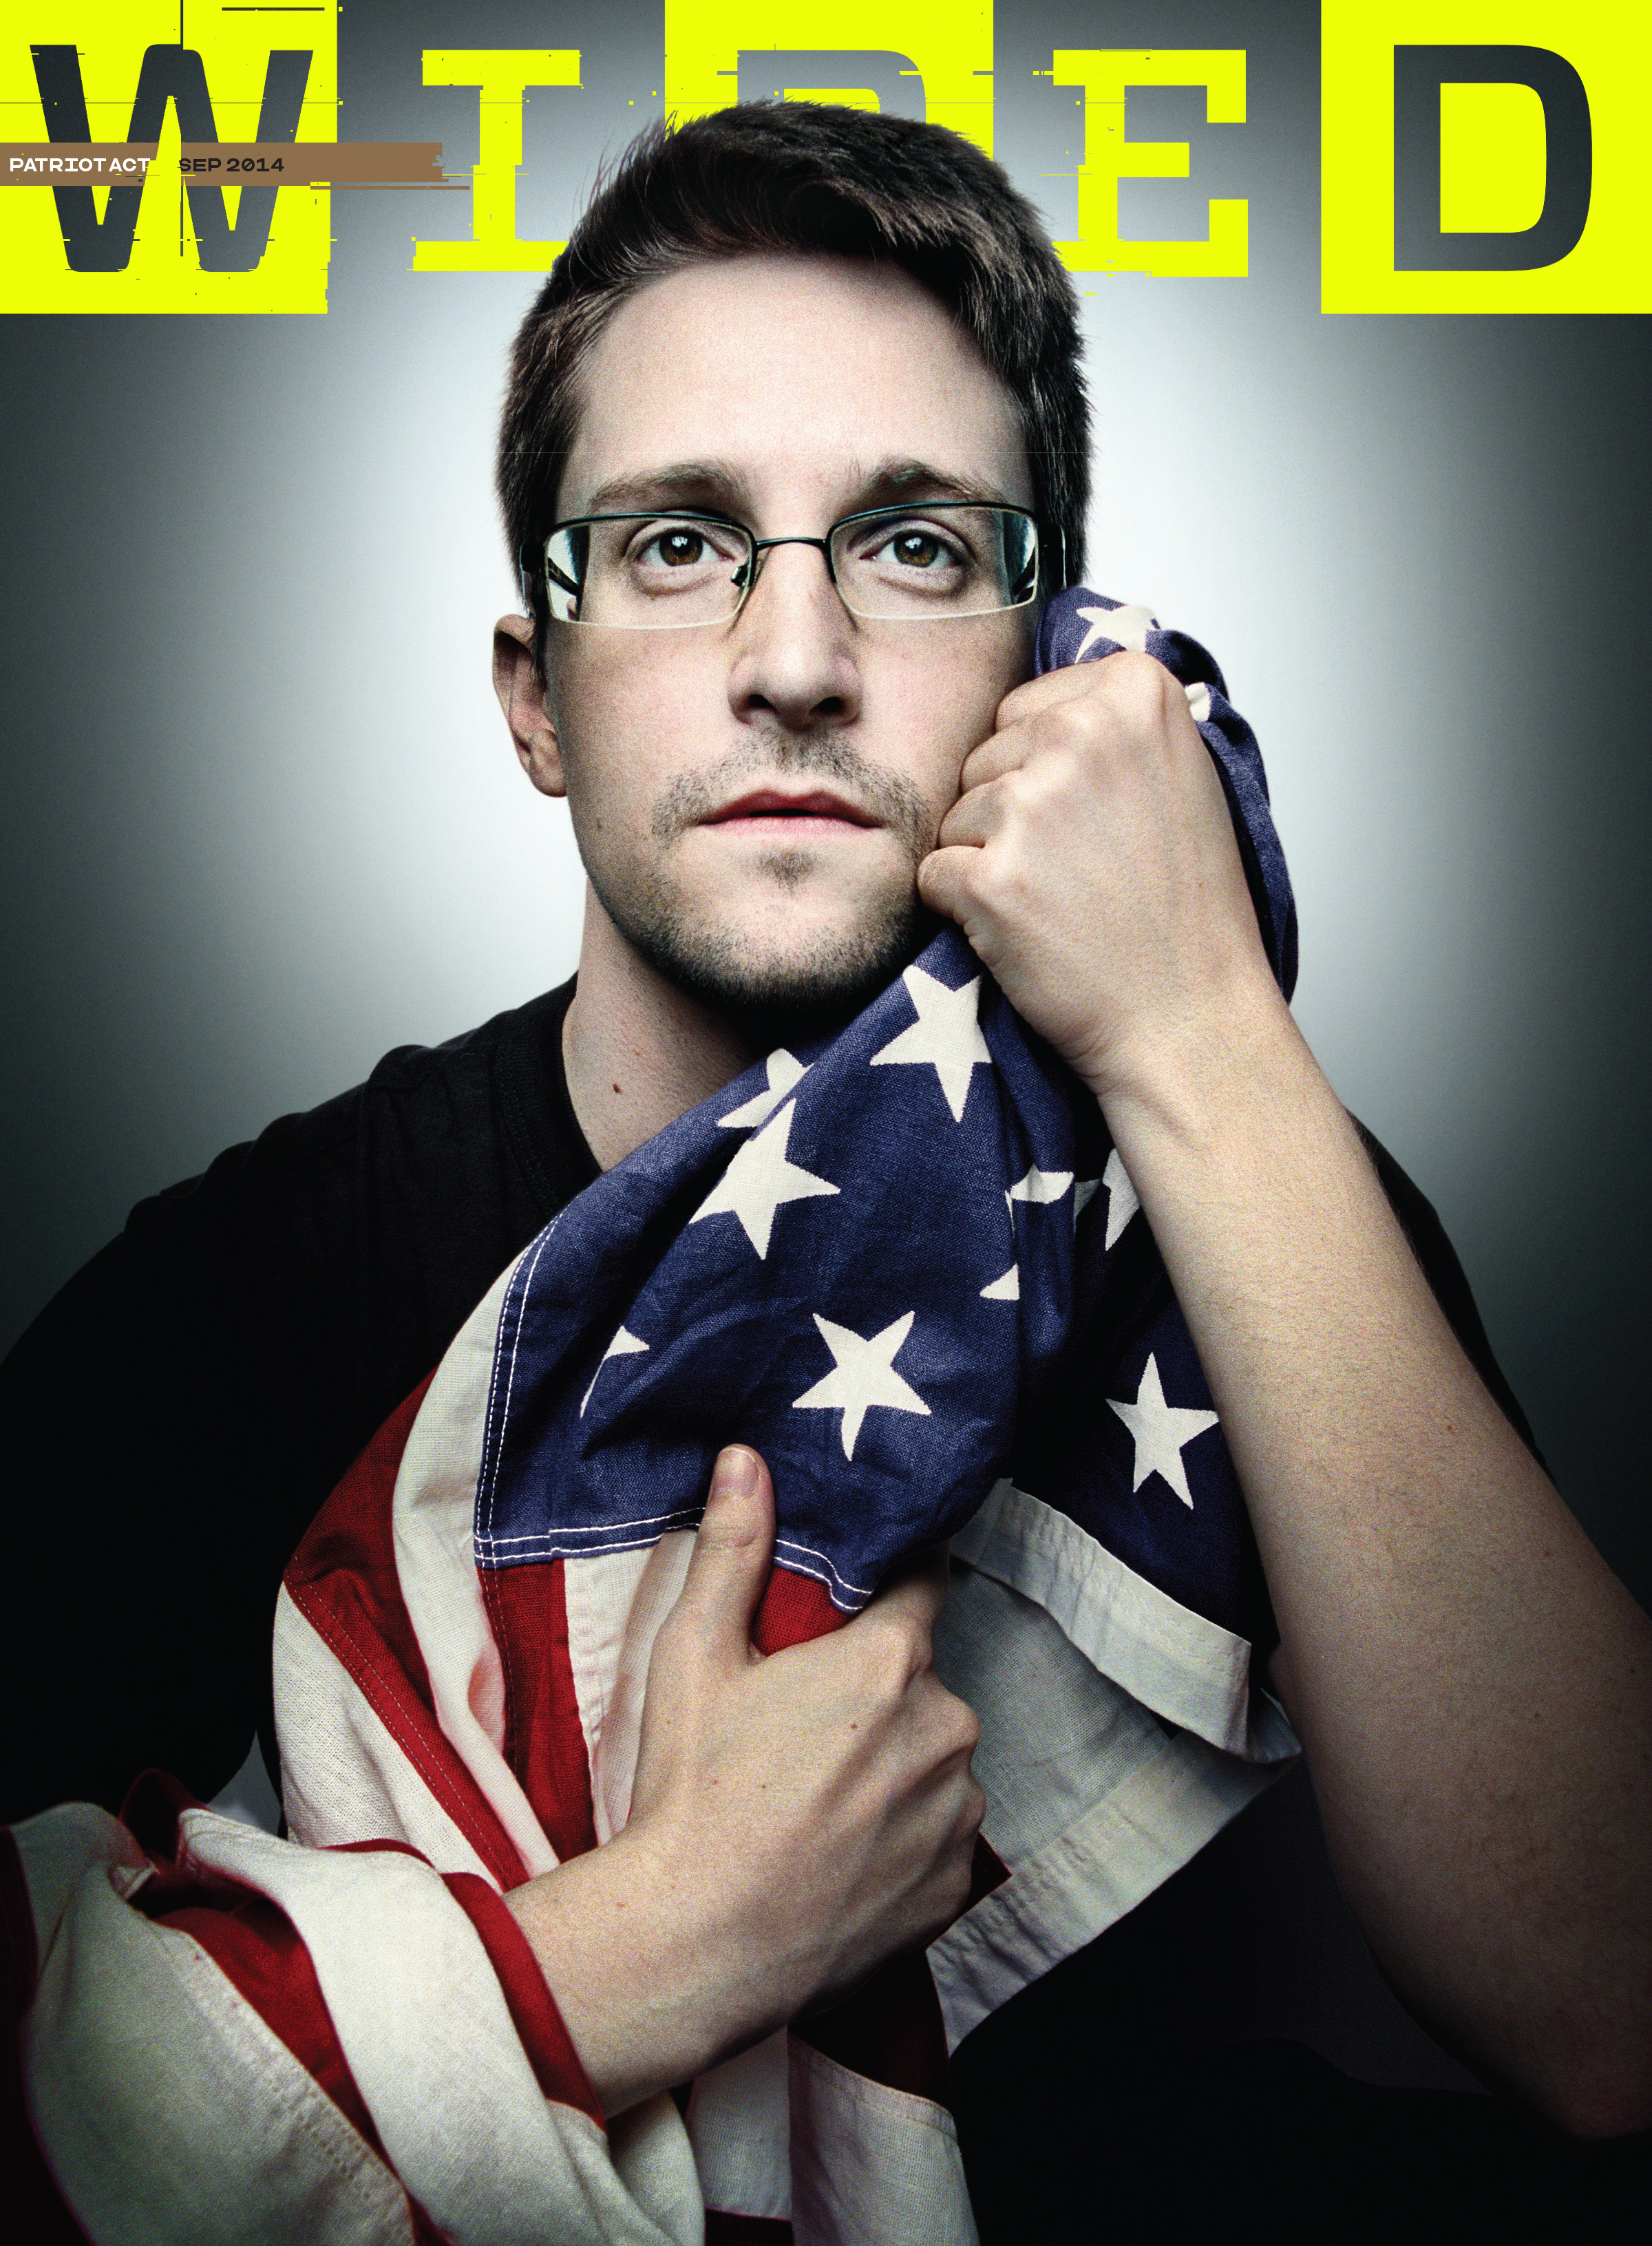 WIRED_September 2014, "Edward Snowden"